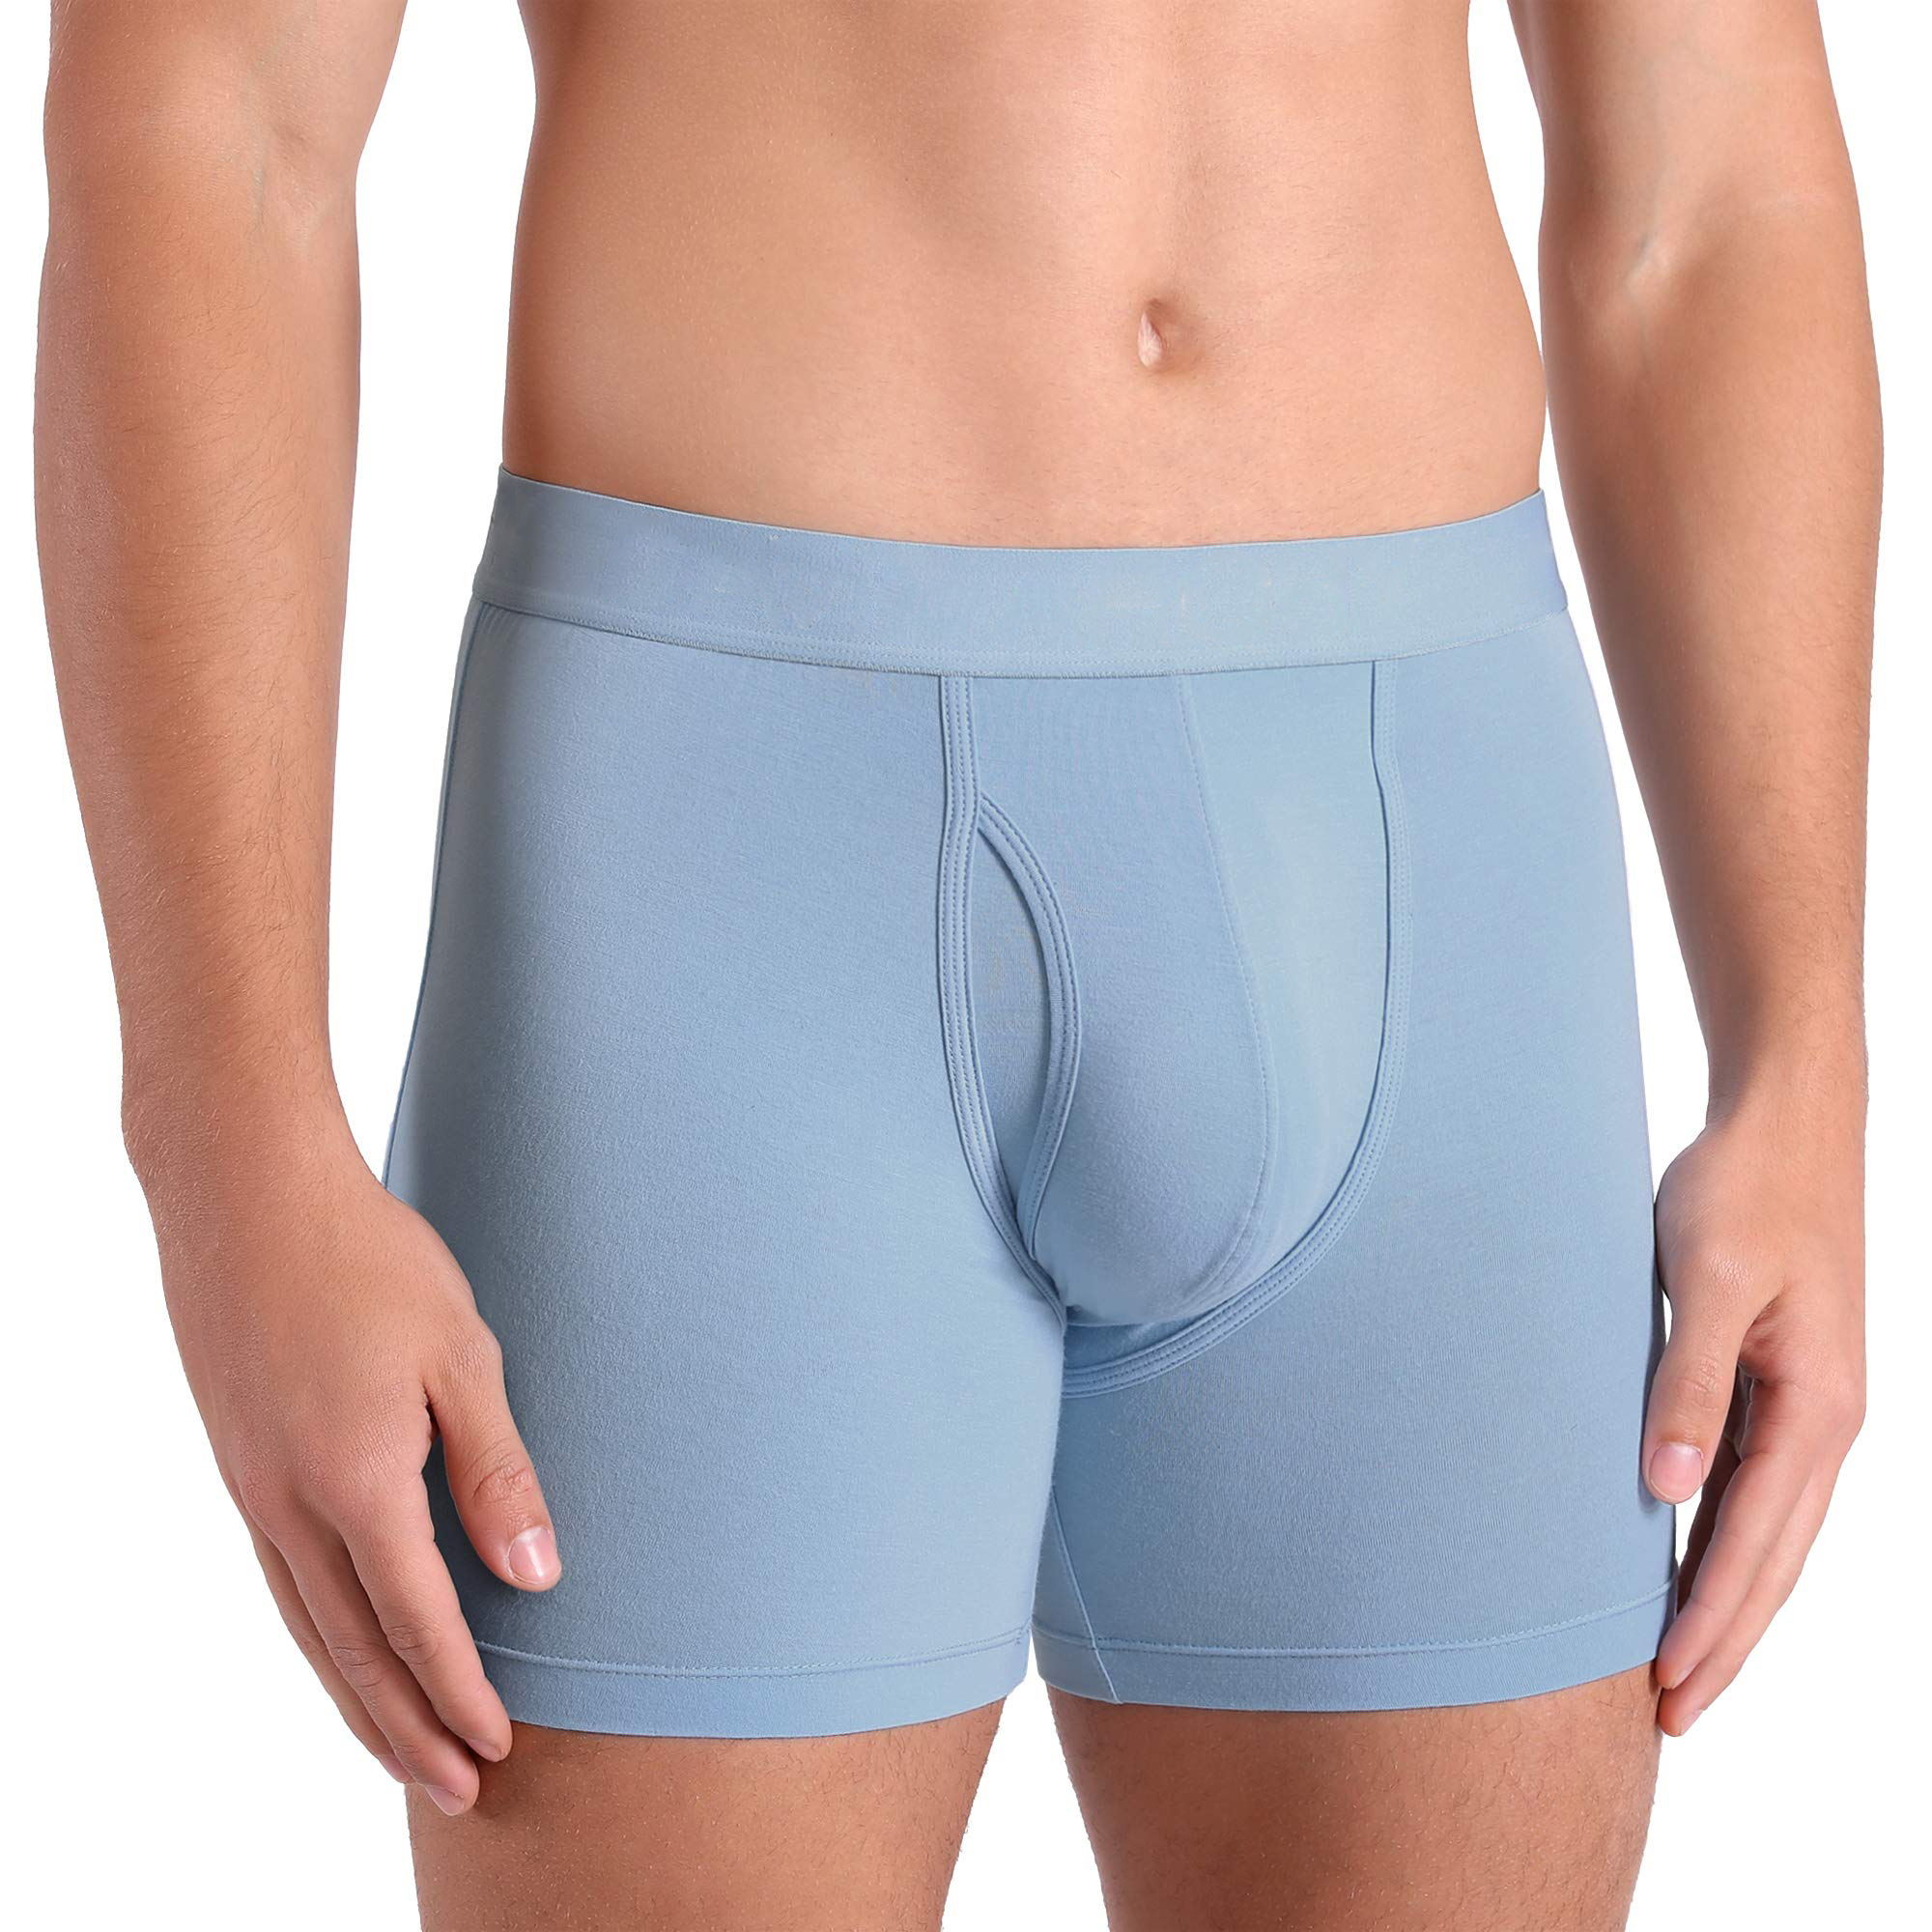 Men's Underwear (18)